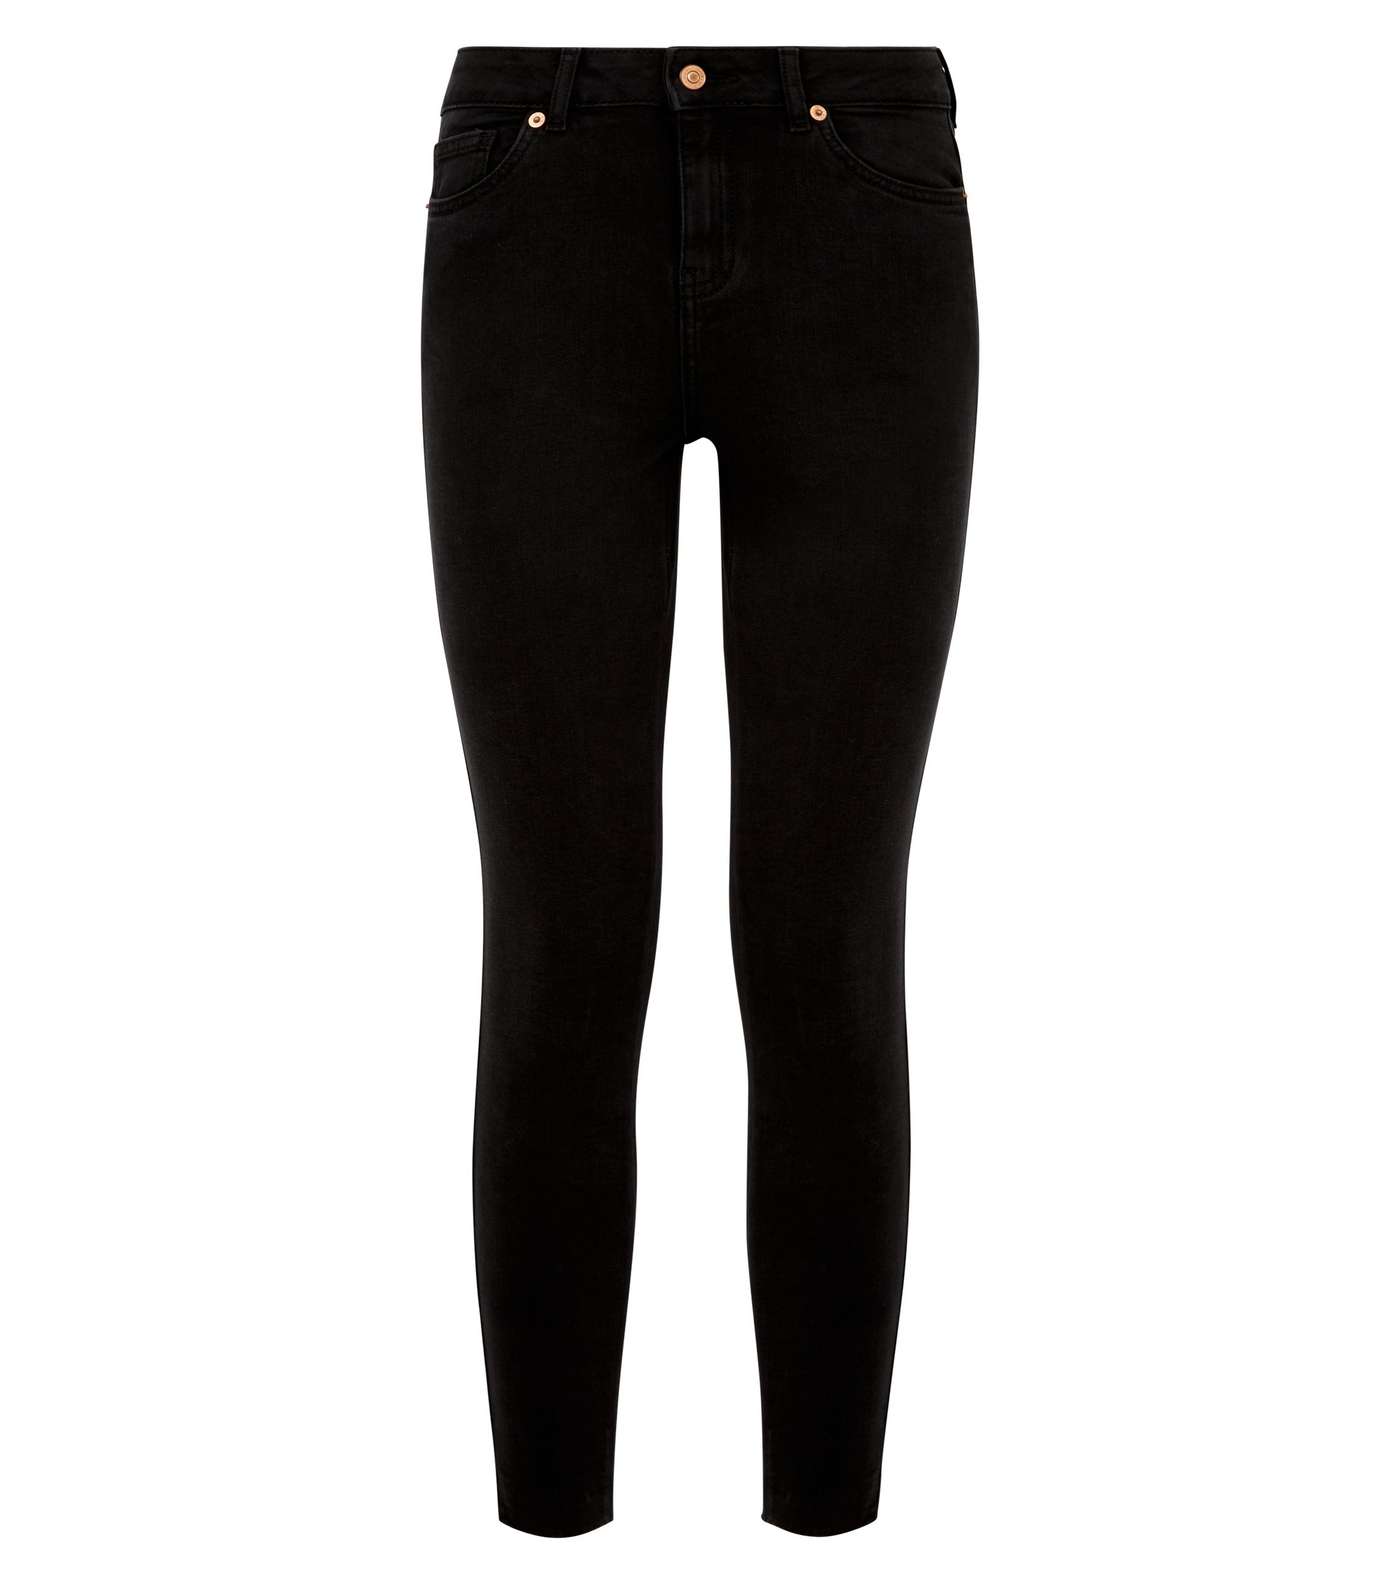 Black Frayed Hem Skinny Jenna Jeans Image 4